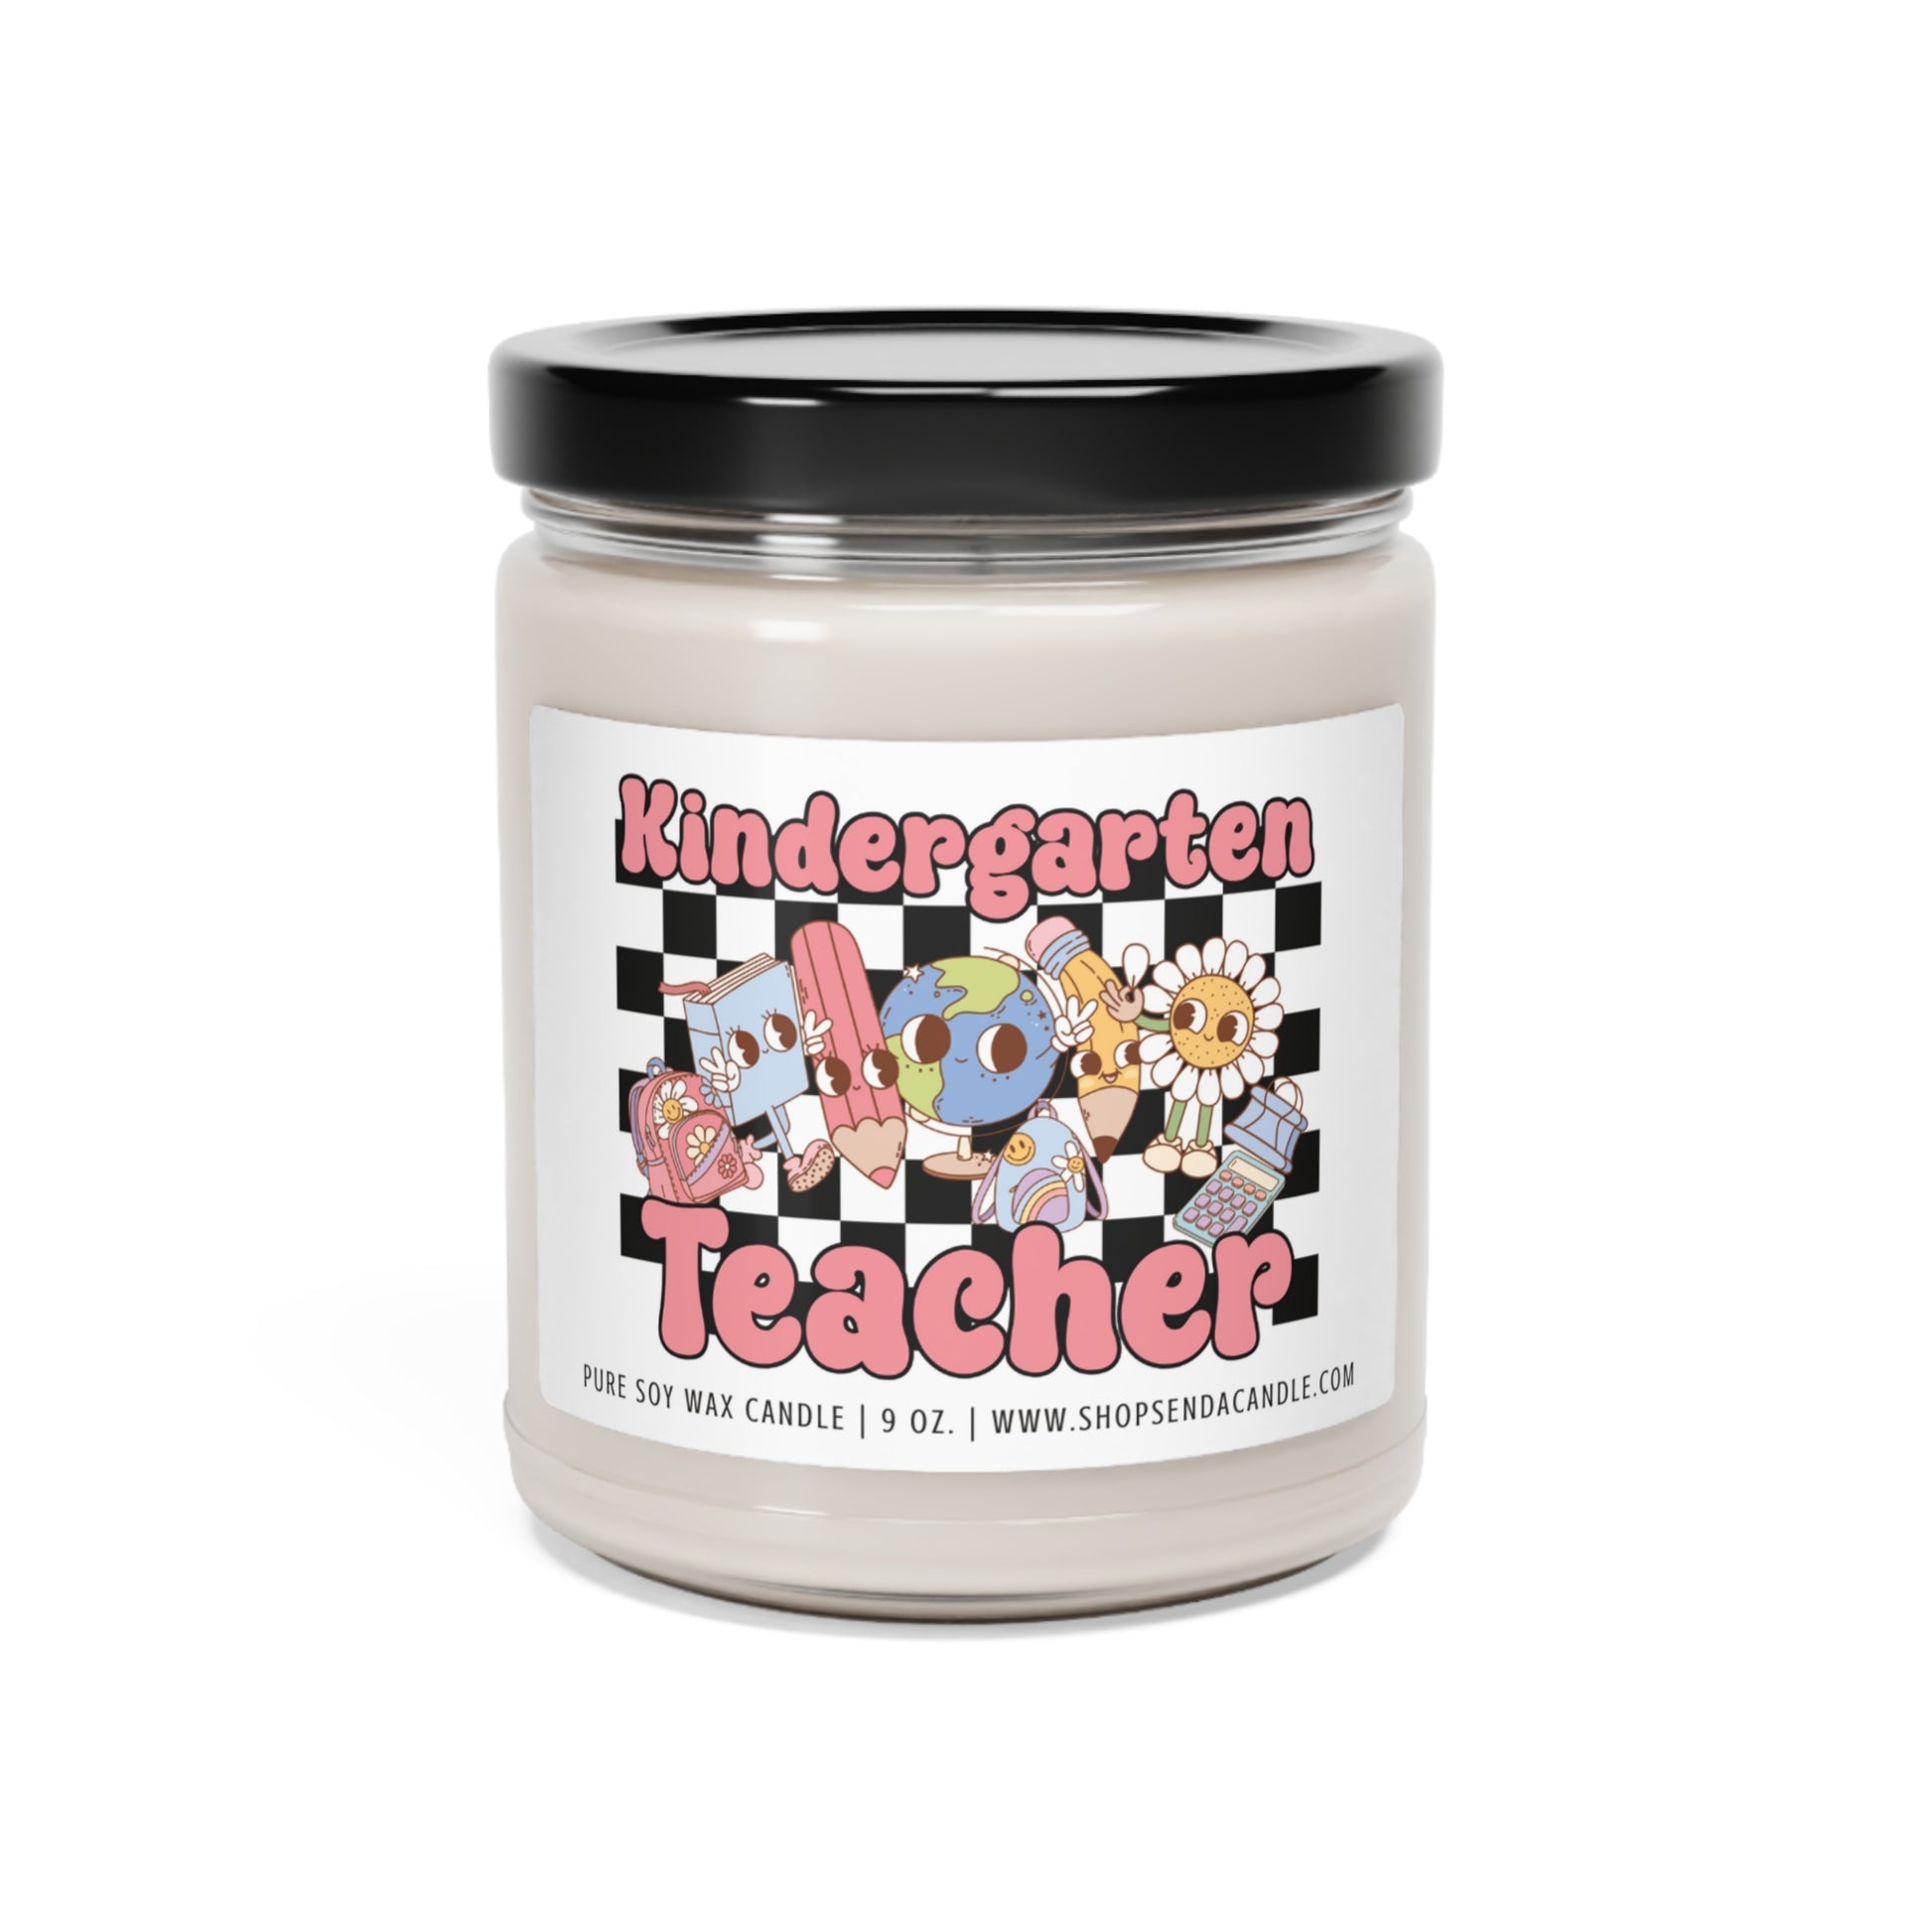 Kindergarten Teacher Gift Ideas | Send A Candle